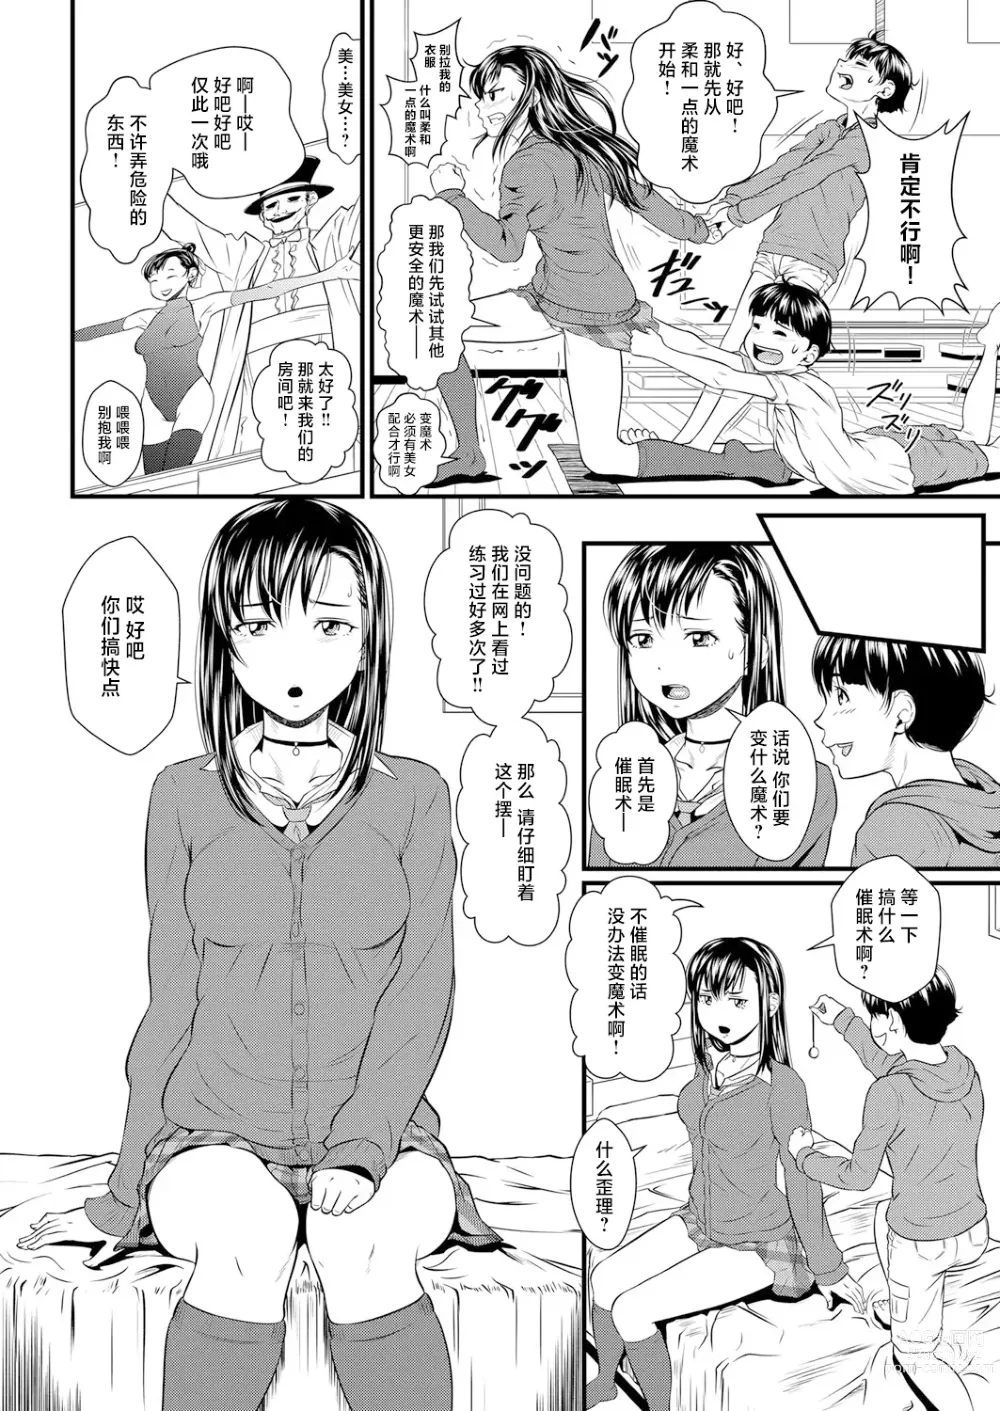 Page 4 of manga Miracle Illusion